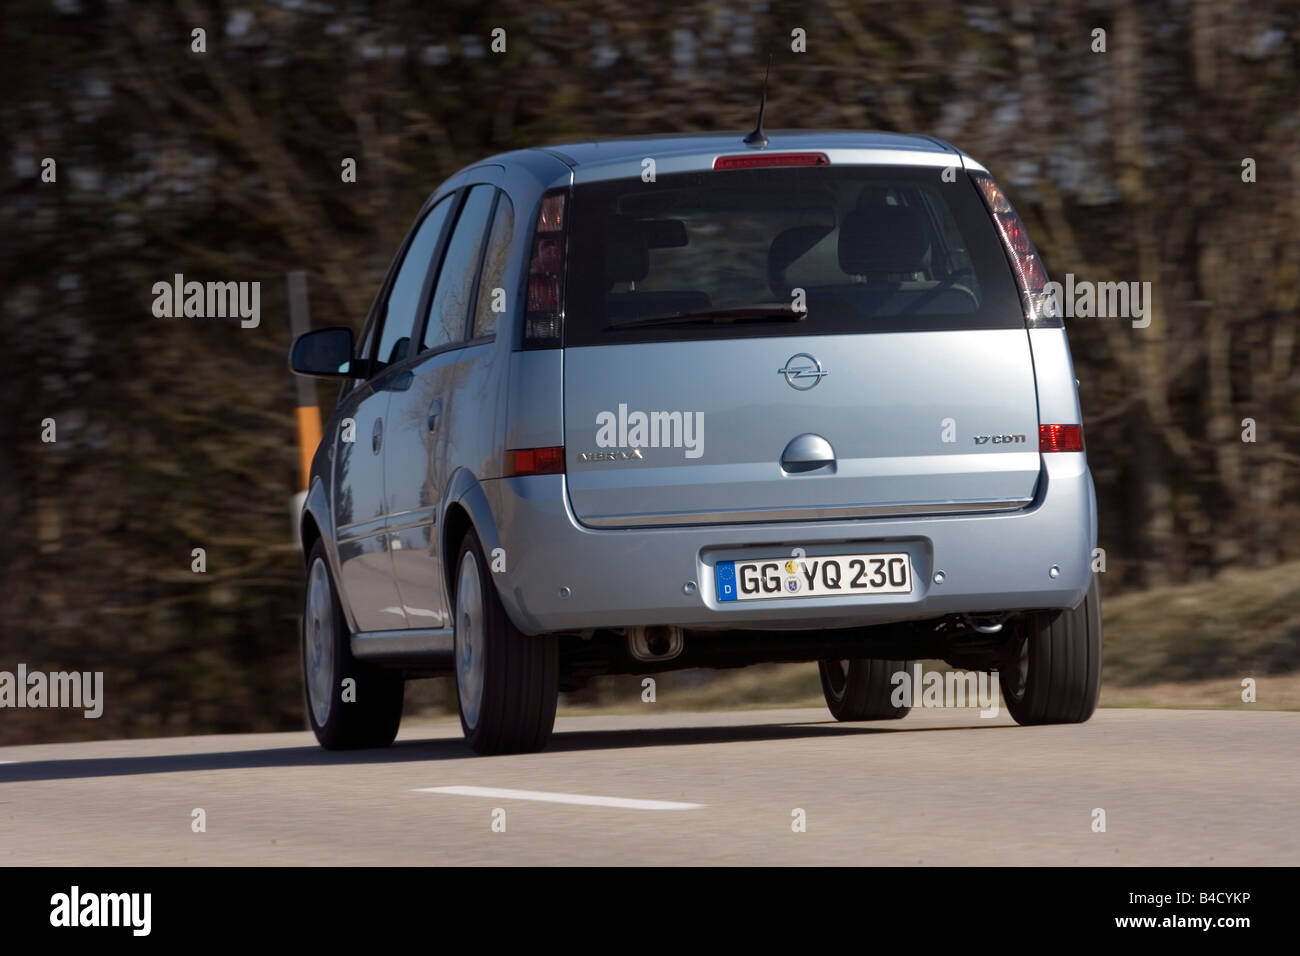 Opel Meriva 1.7 CDTi, année modèle 2007, d'argent, la conduite, la diagonale de l'arrière, vue arrière, country road Banque D'Images